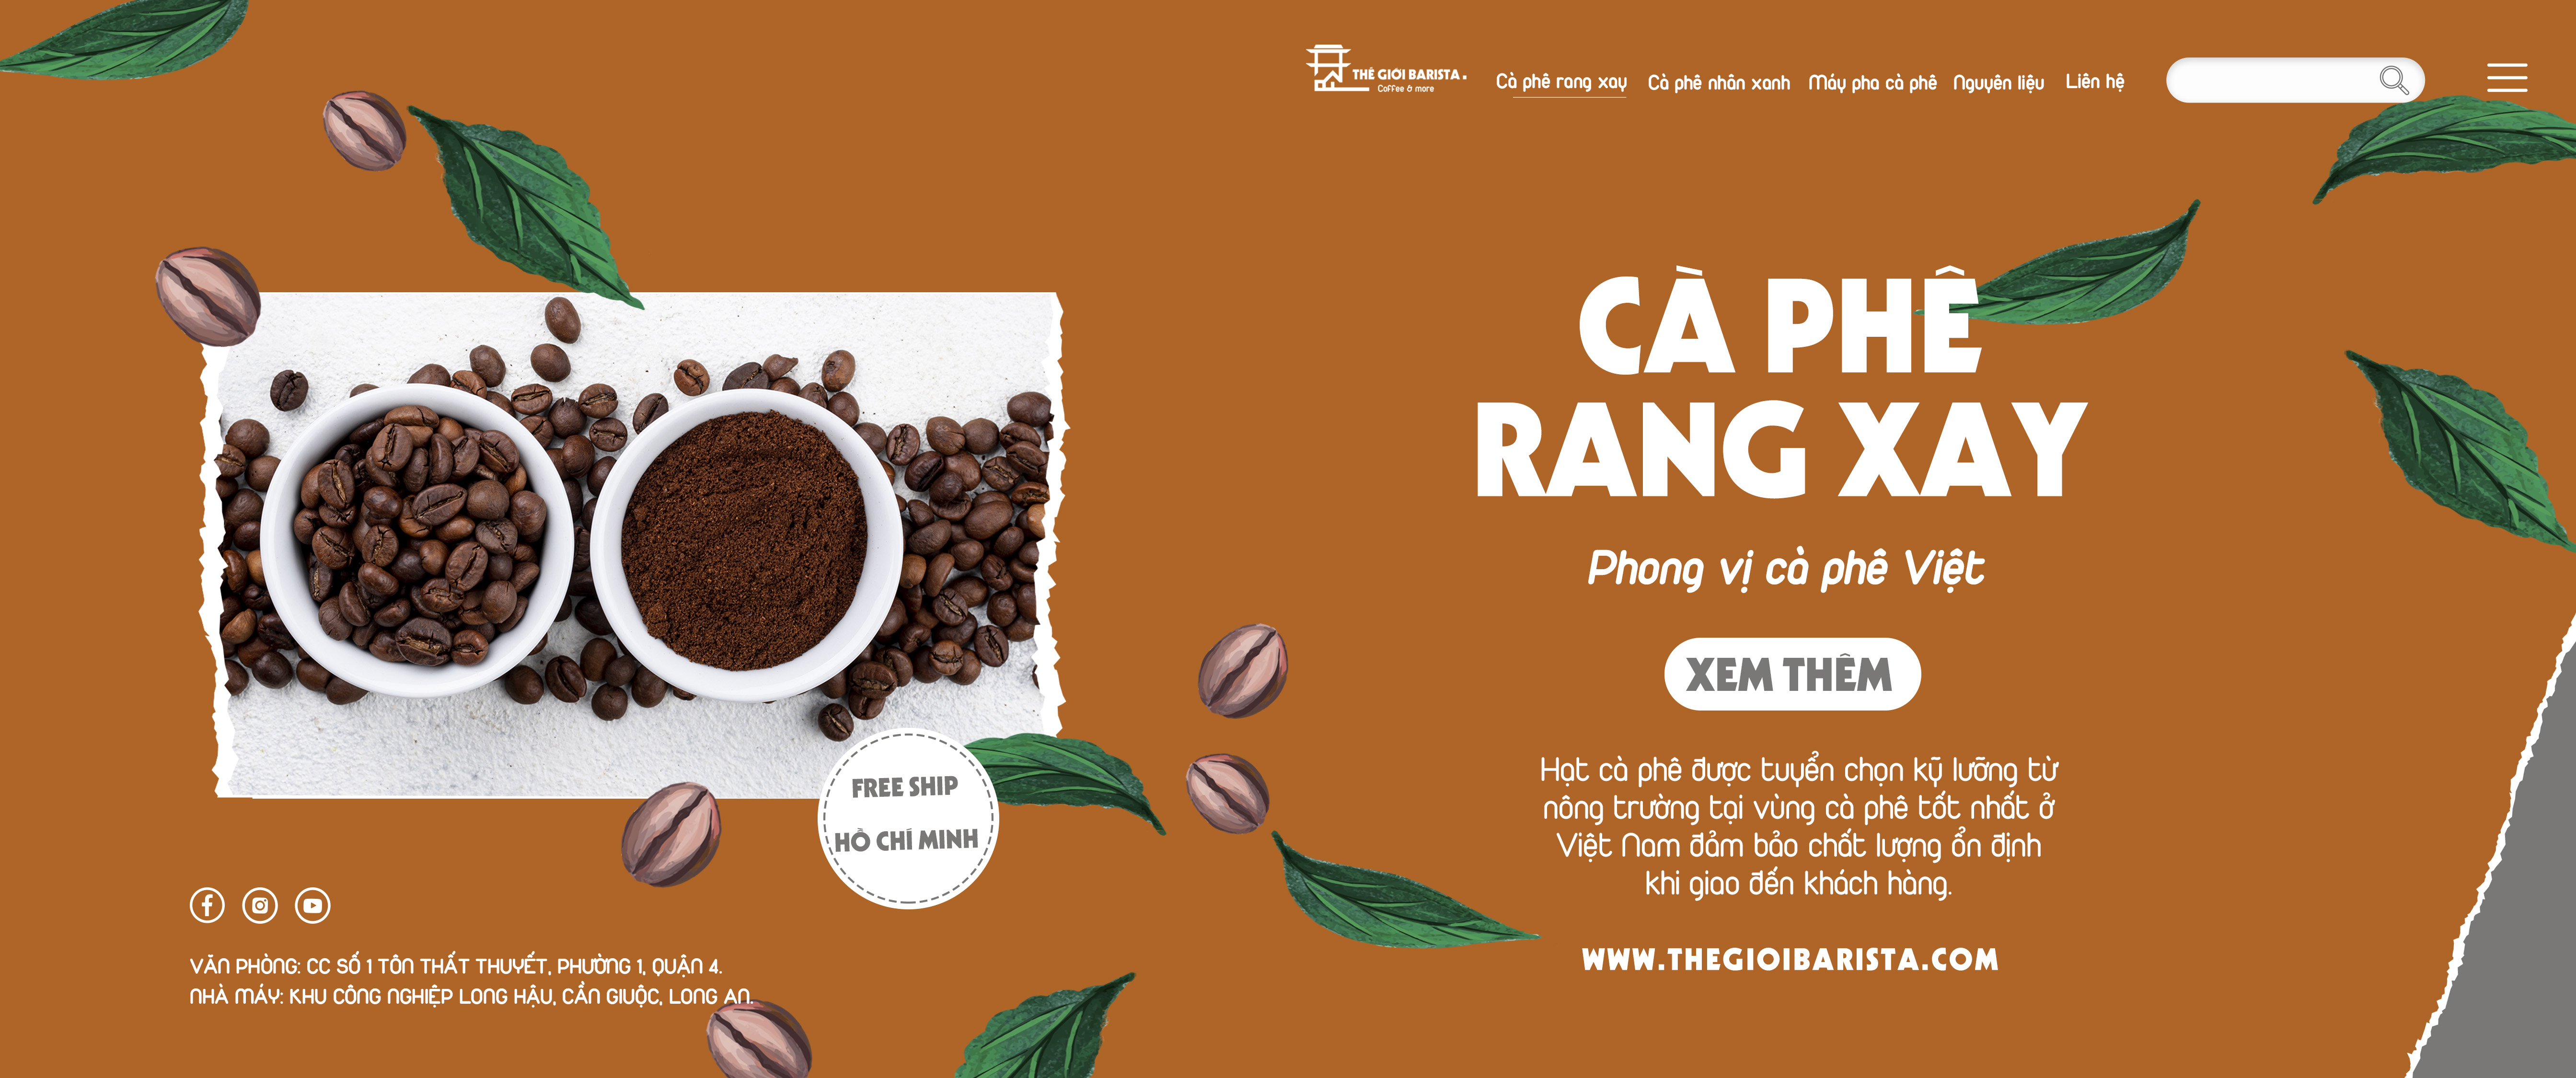 Cà phê rang xay Hồ Chí Minh